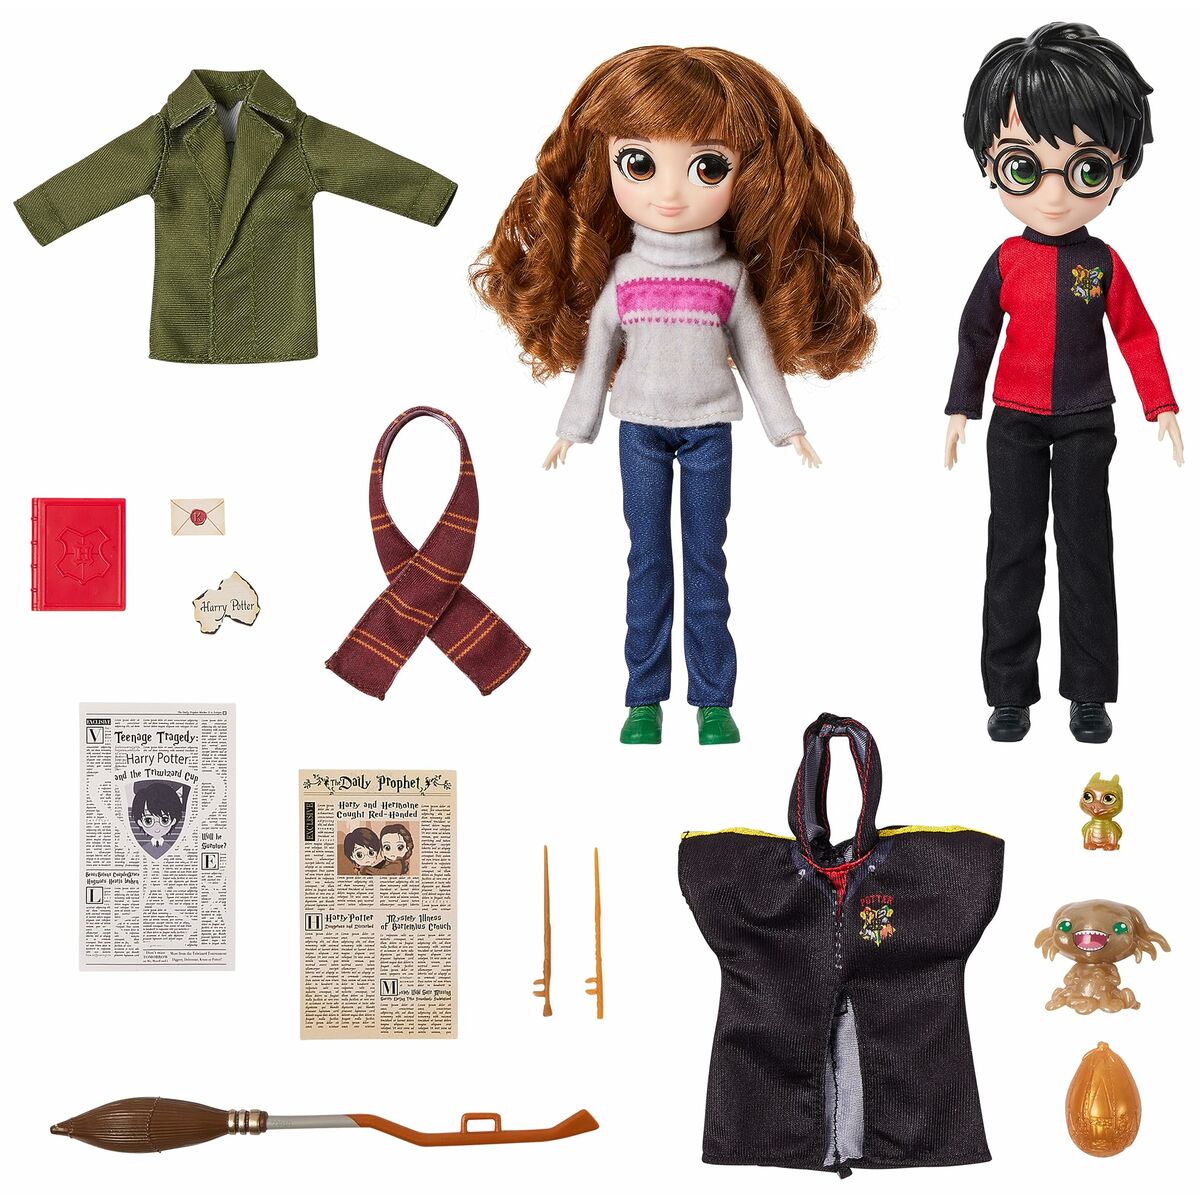 Playset Spin Master HArry Potter & Hermione Granger Accessori - Disponibile in 3-4 giorni lavorativi